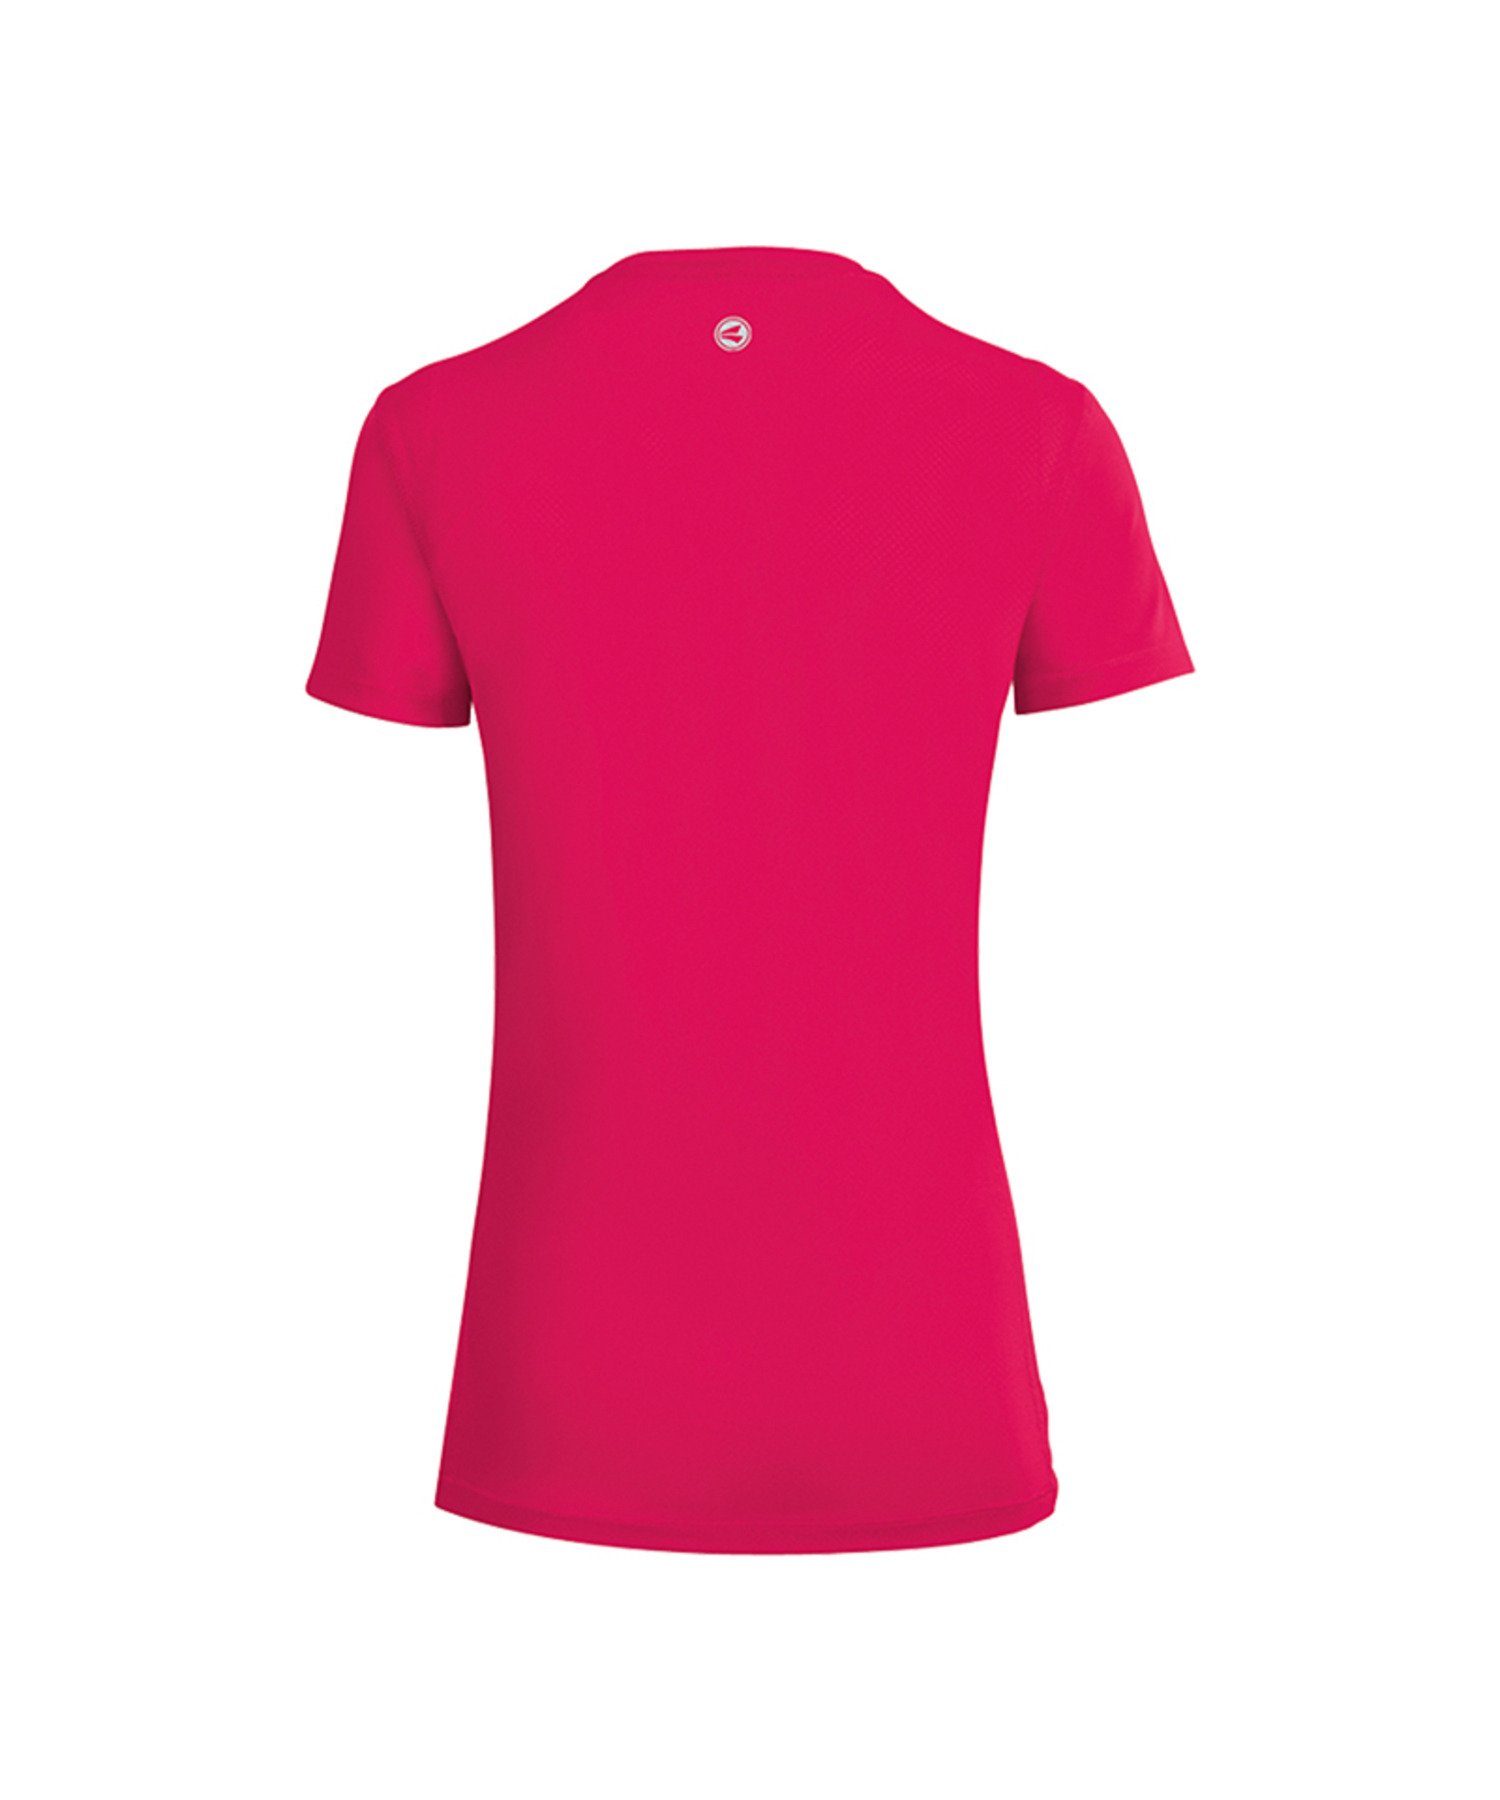 Jako Run T-Shirt Laufshirt Pink Damen 2.0 default Running